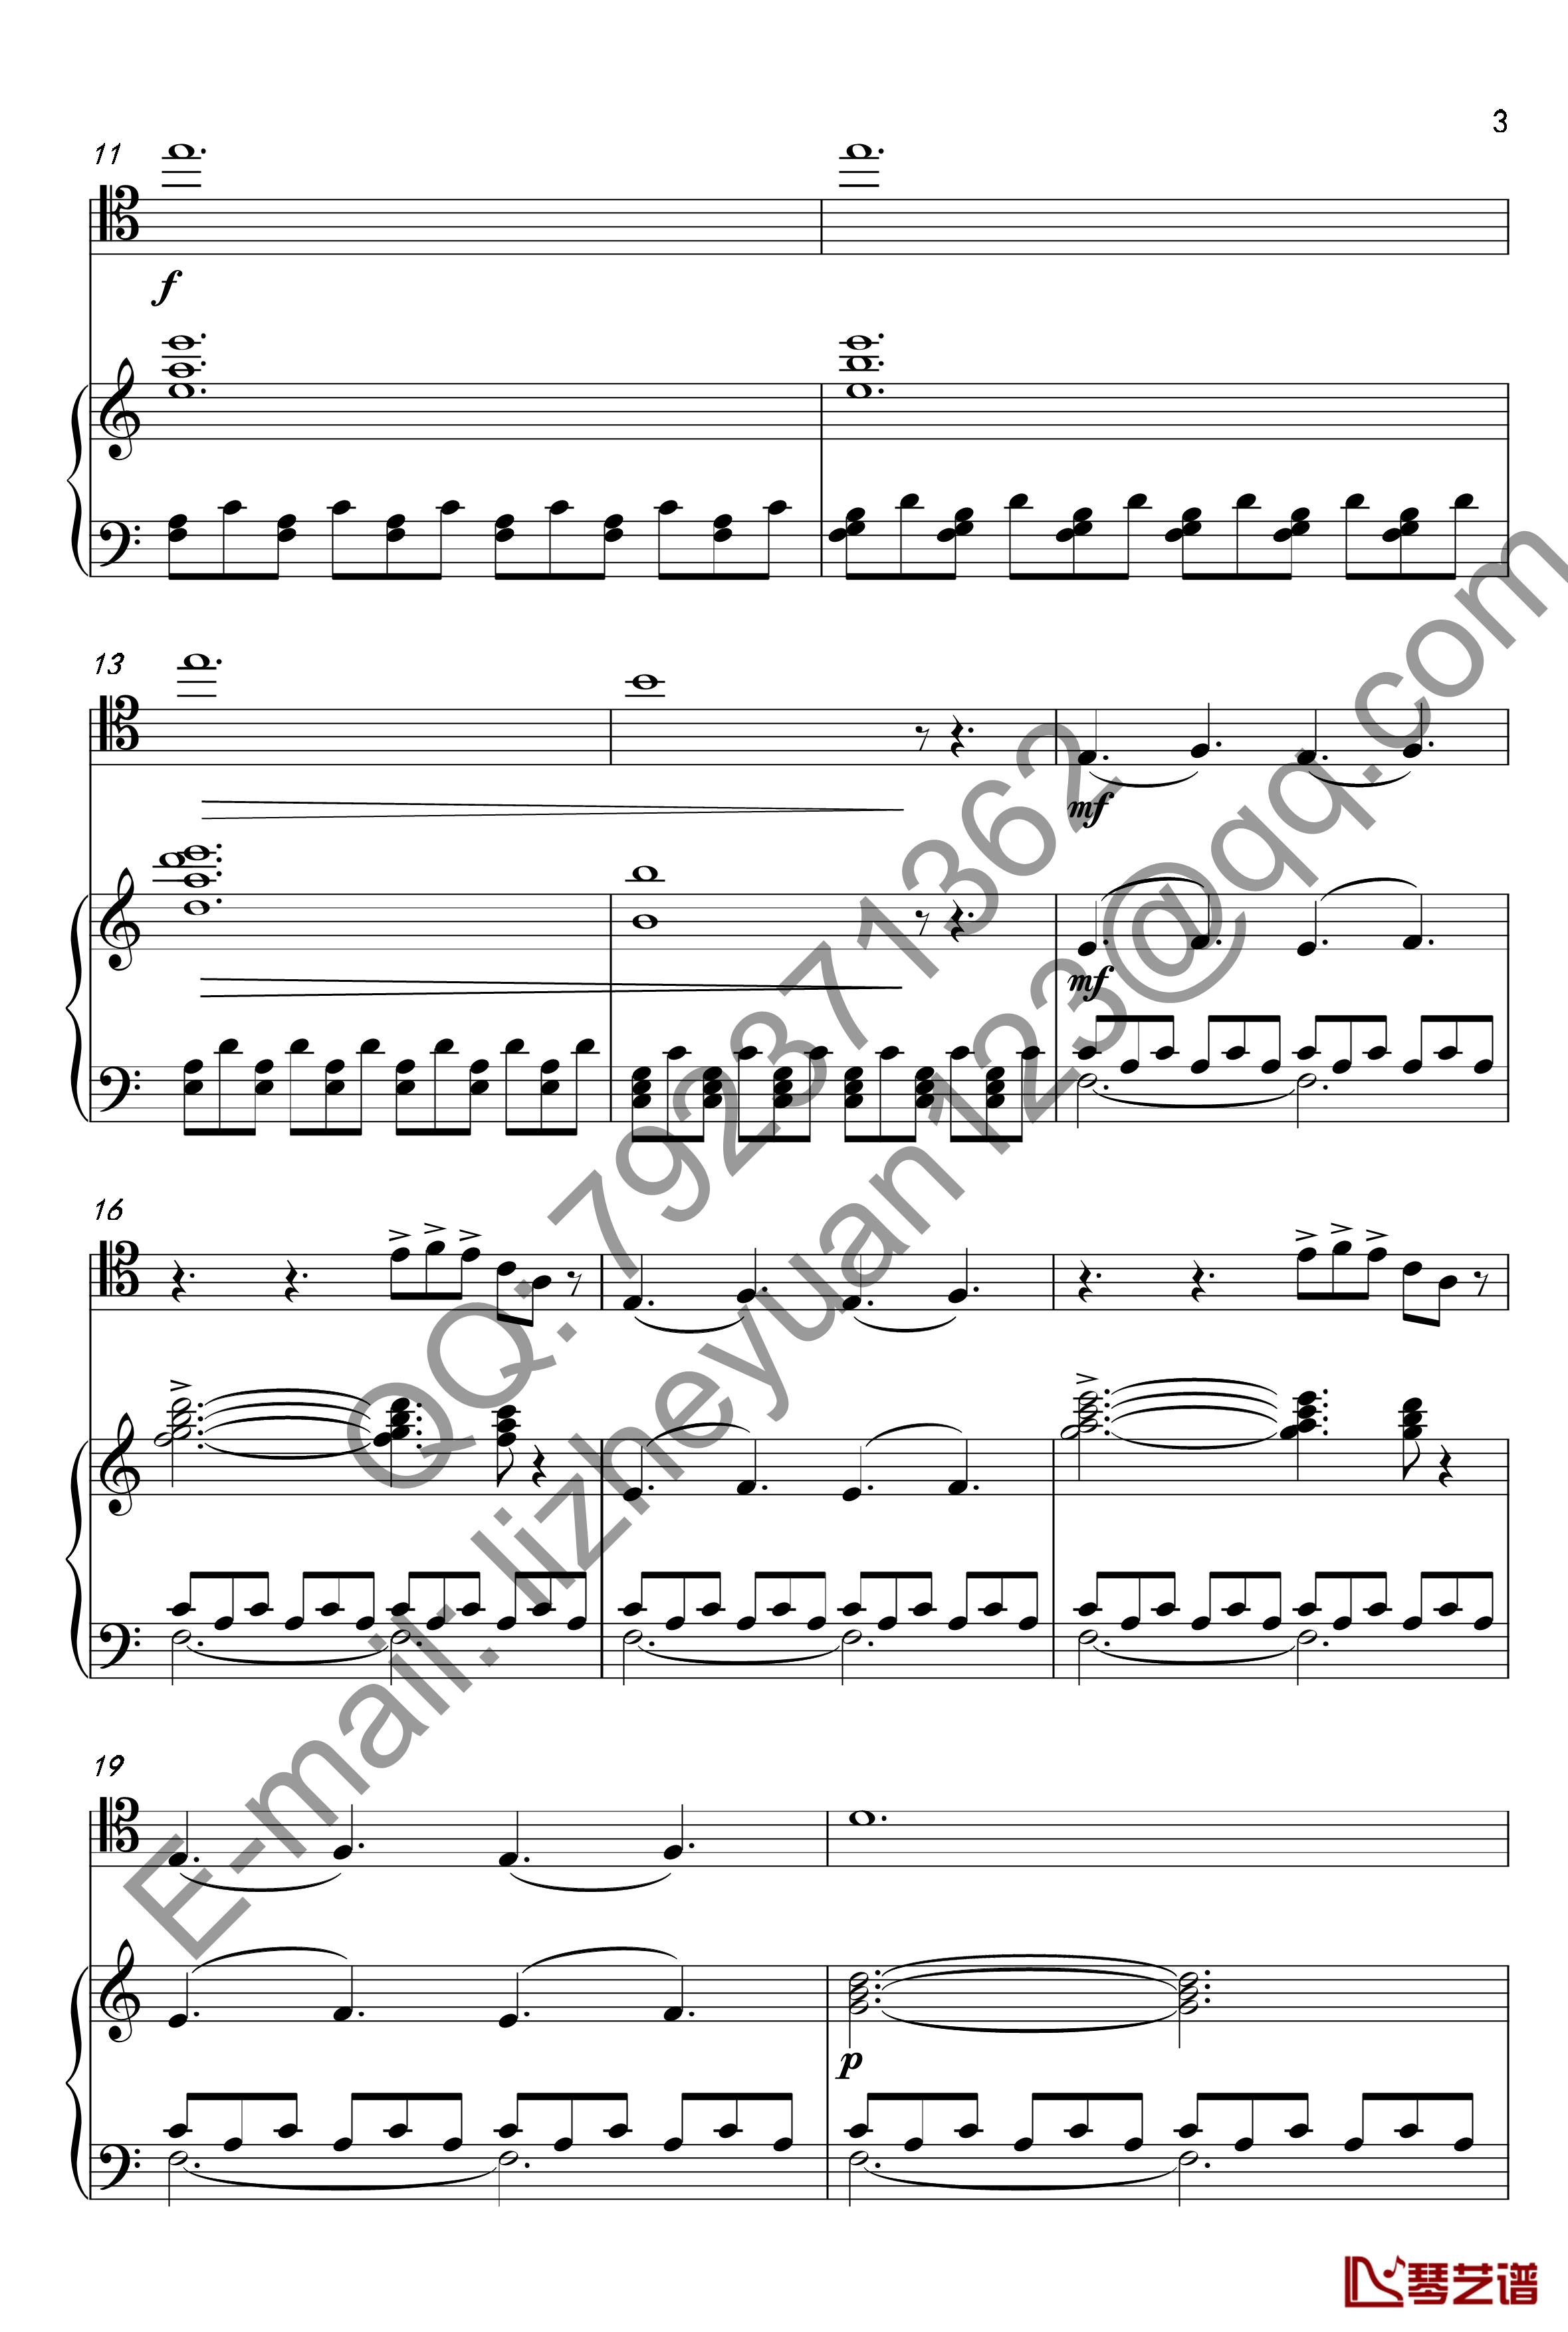 唐顿庄园主题曲钢琴谱-钢琴+大提琴-唐顿庄园3